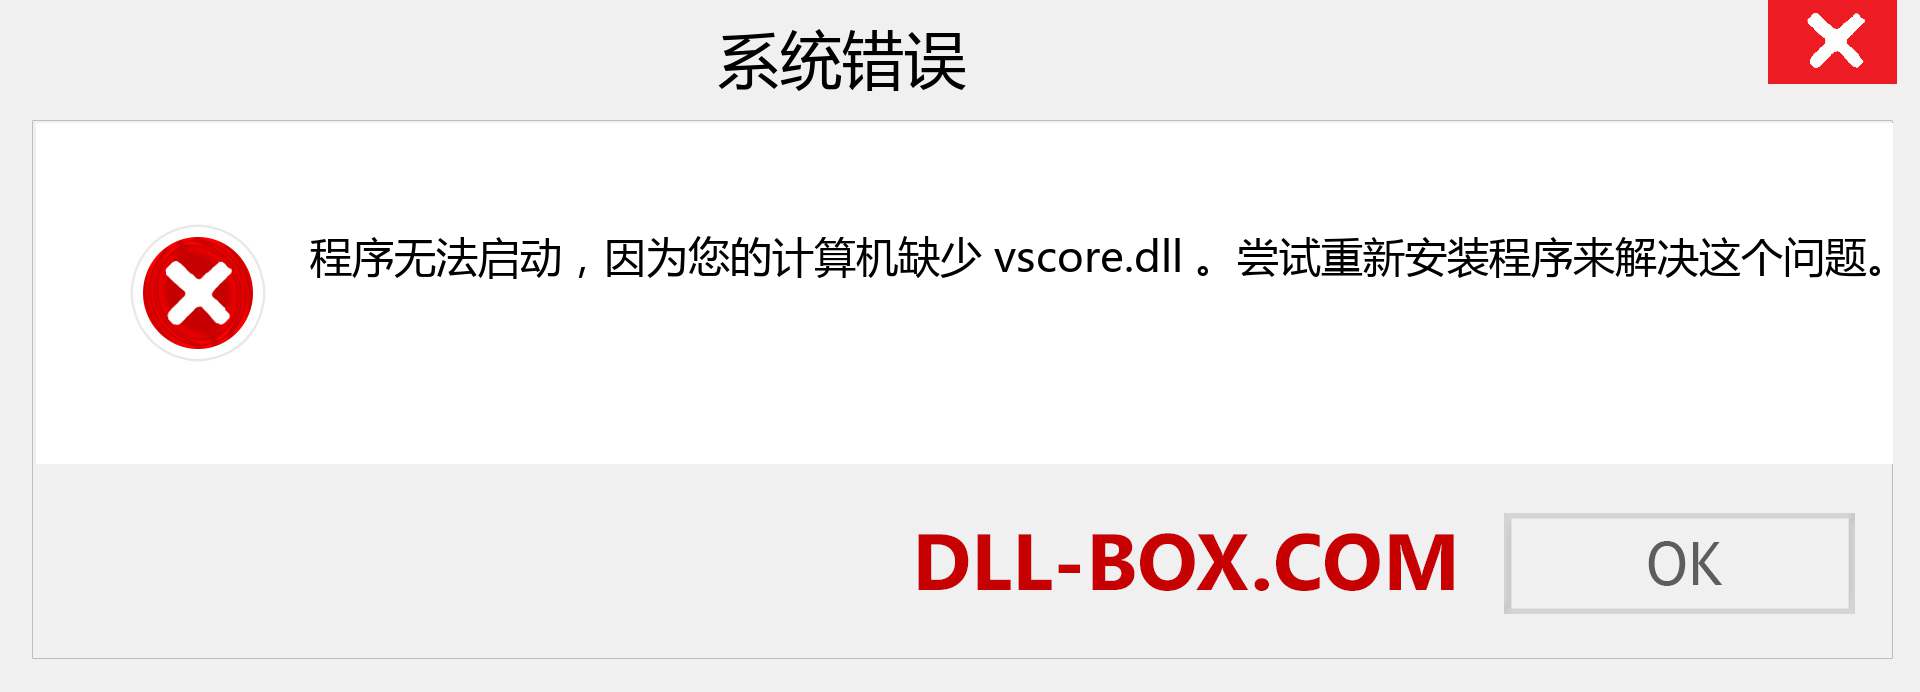 vscore.dll 文件丢失？。 适用于 Windows 7、8、10 的下载 - 修复 Windows、照片、图像上的 vscore dll 丢失错误